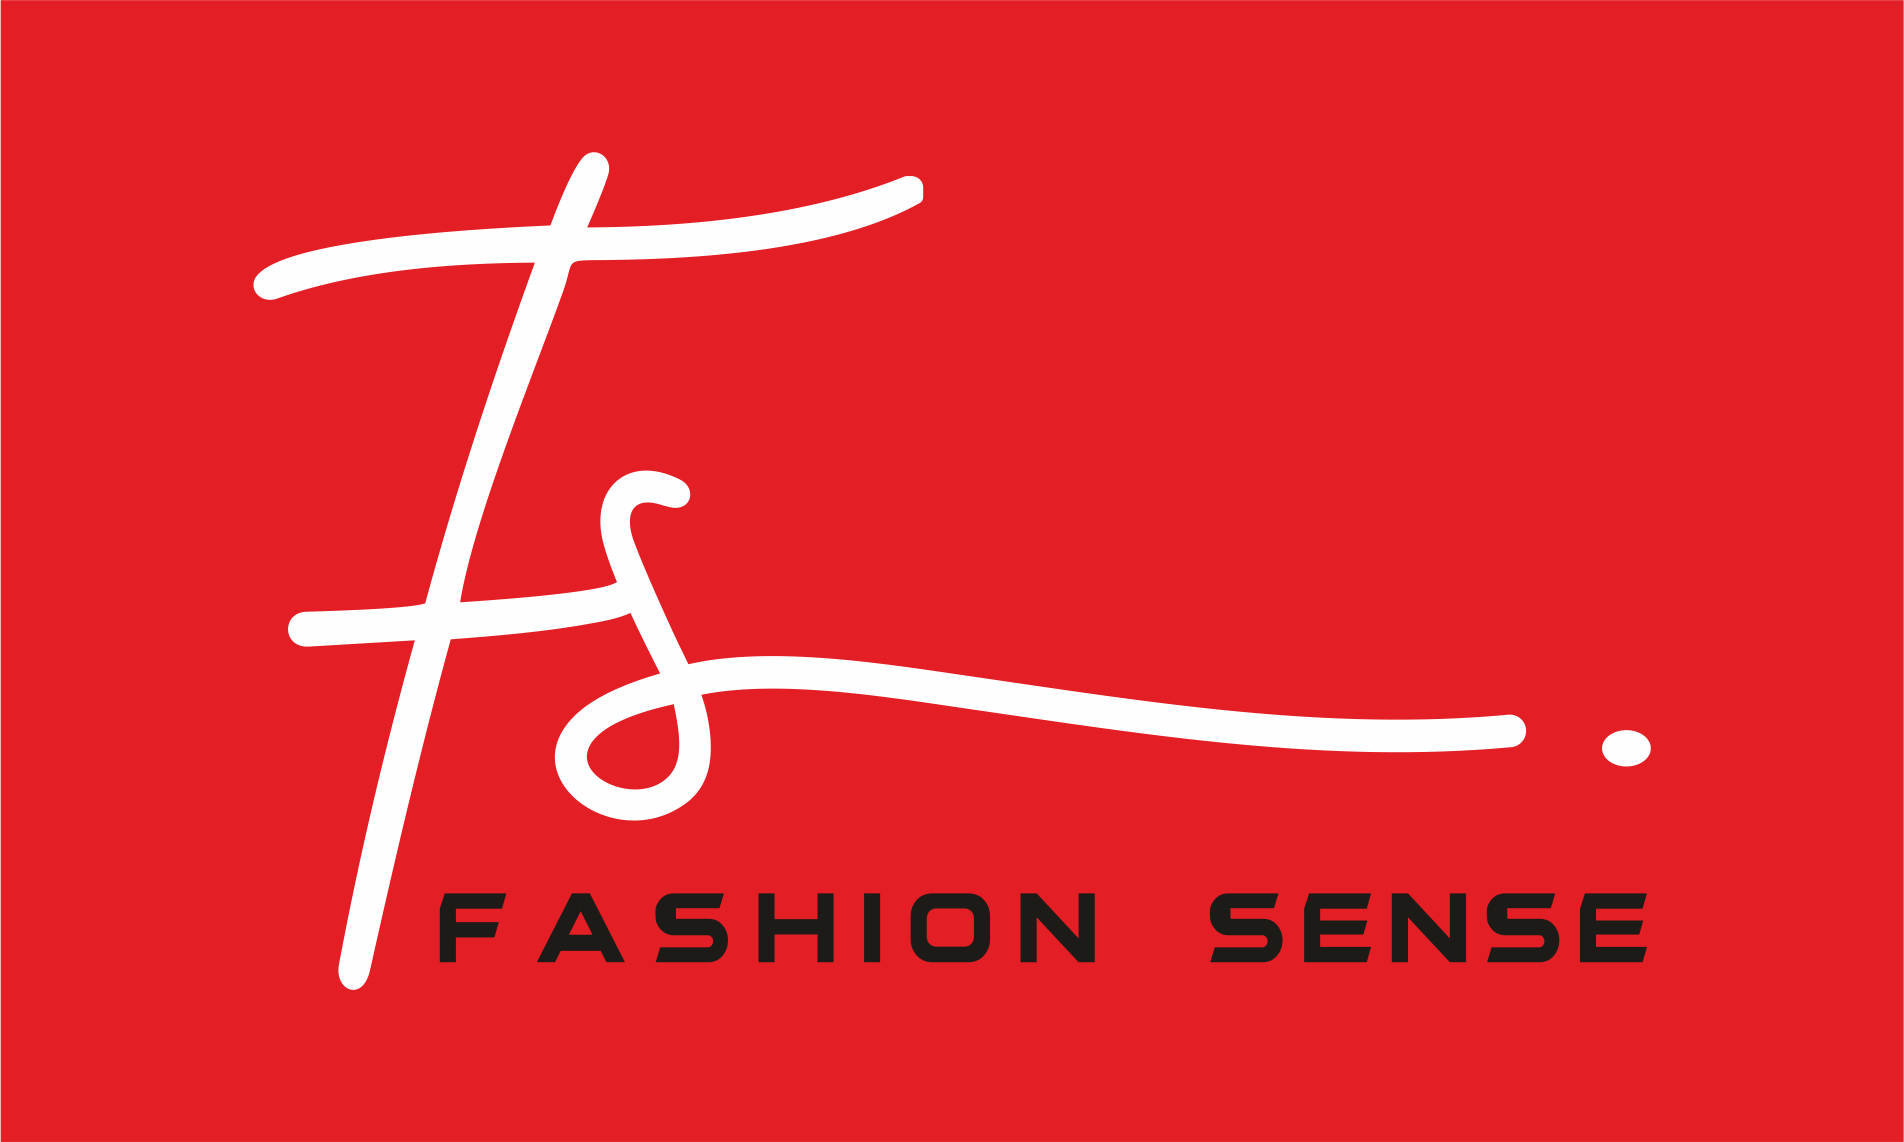 FS (Fashion Sense)